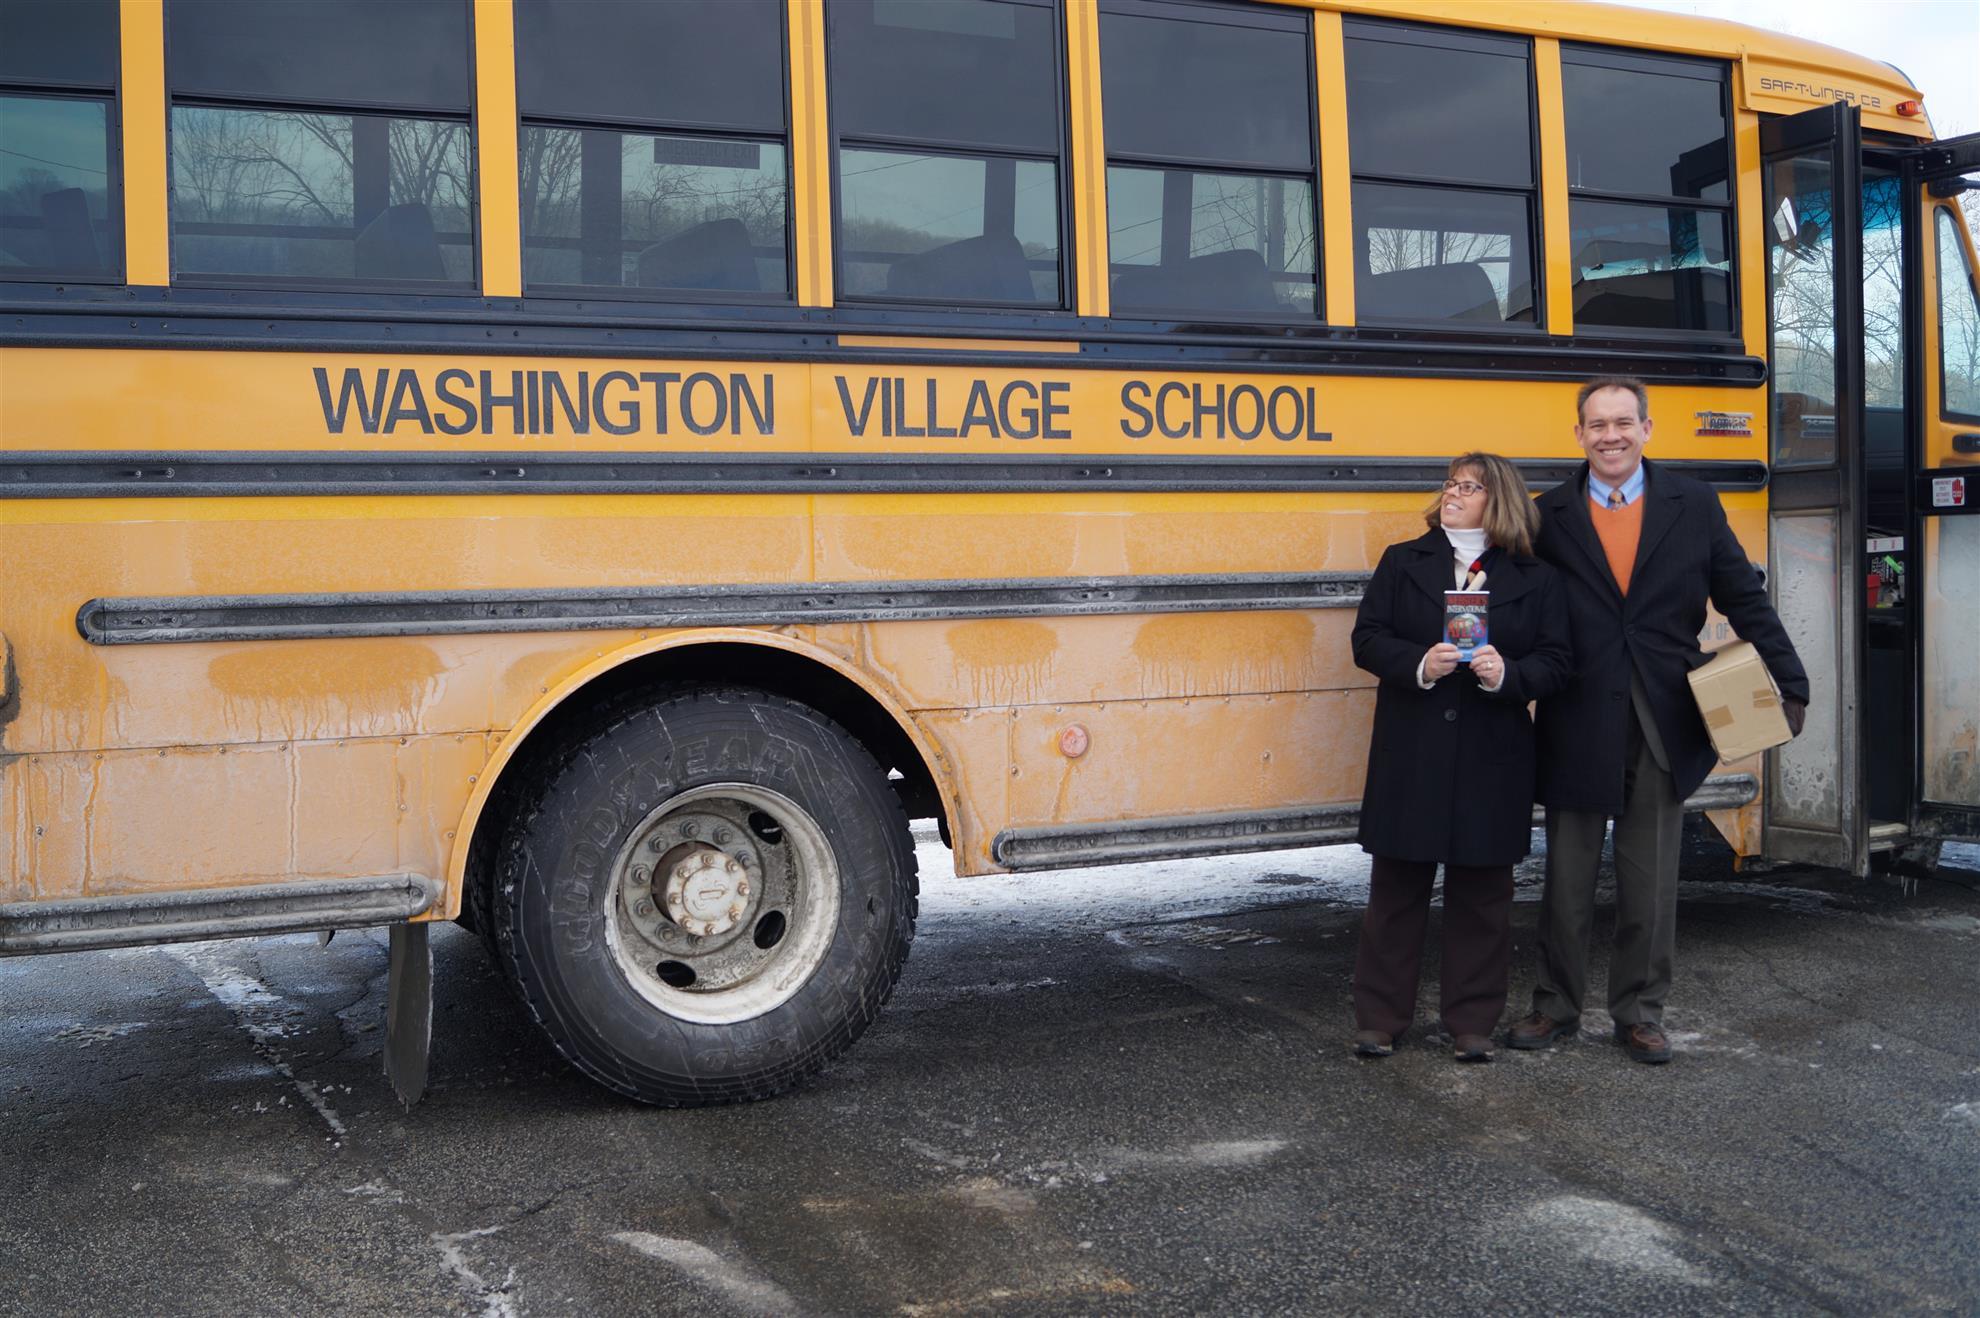 Washington Village School Bus With Elizabeth LaPerle & Joe Preddy